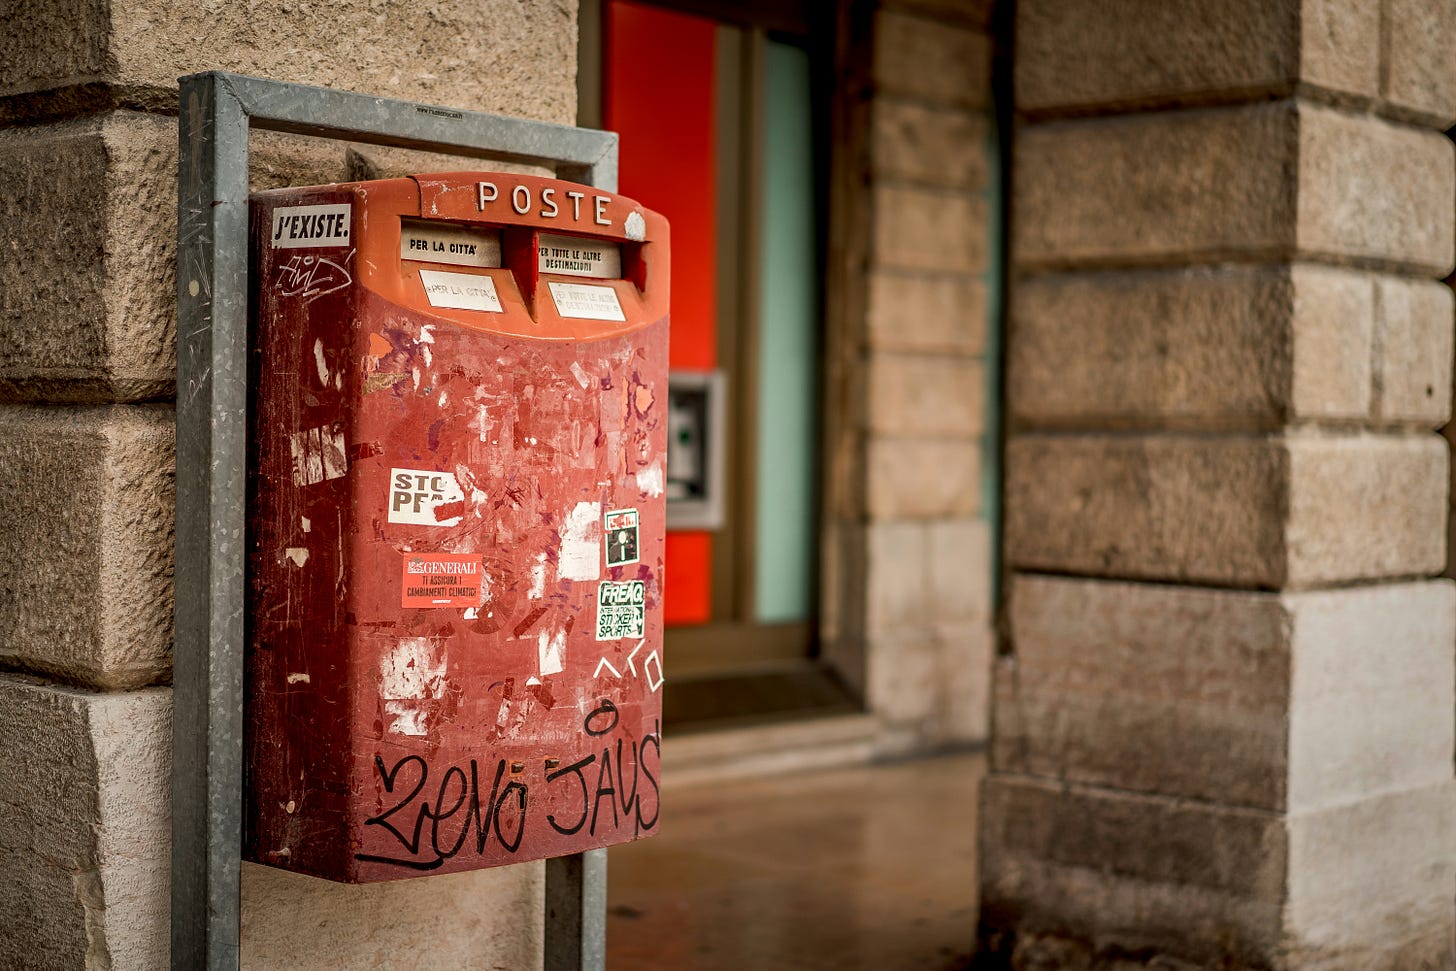 Una vecchia cassetta postale rossa